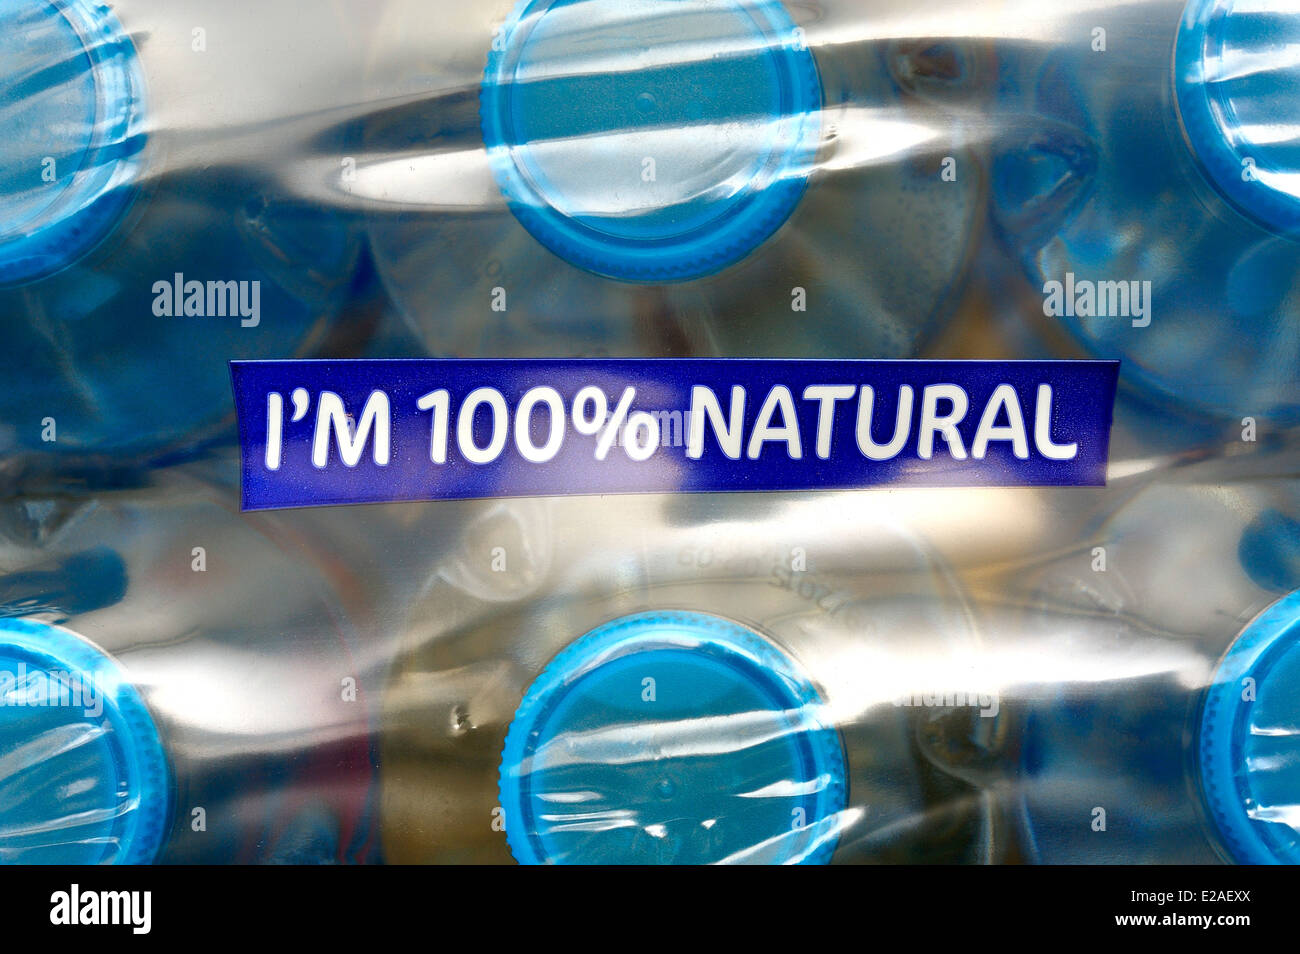 Sto 100% naturale messaggio di marketing sulla parte superiore di un caso di acqua in bottiglia. Foto Stock